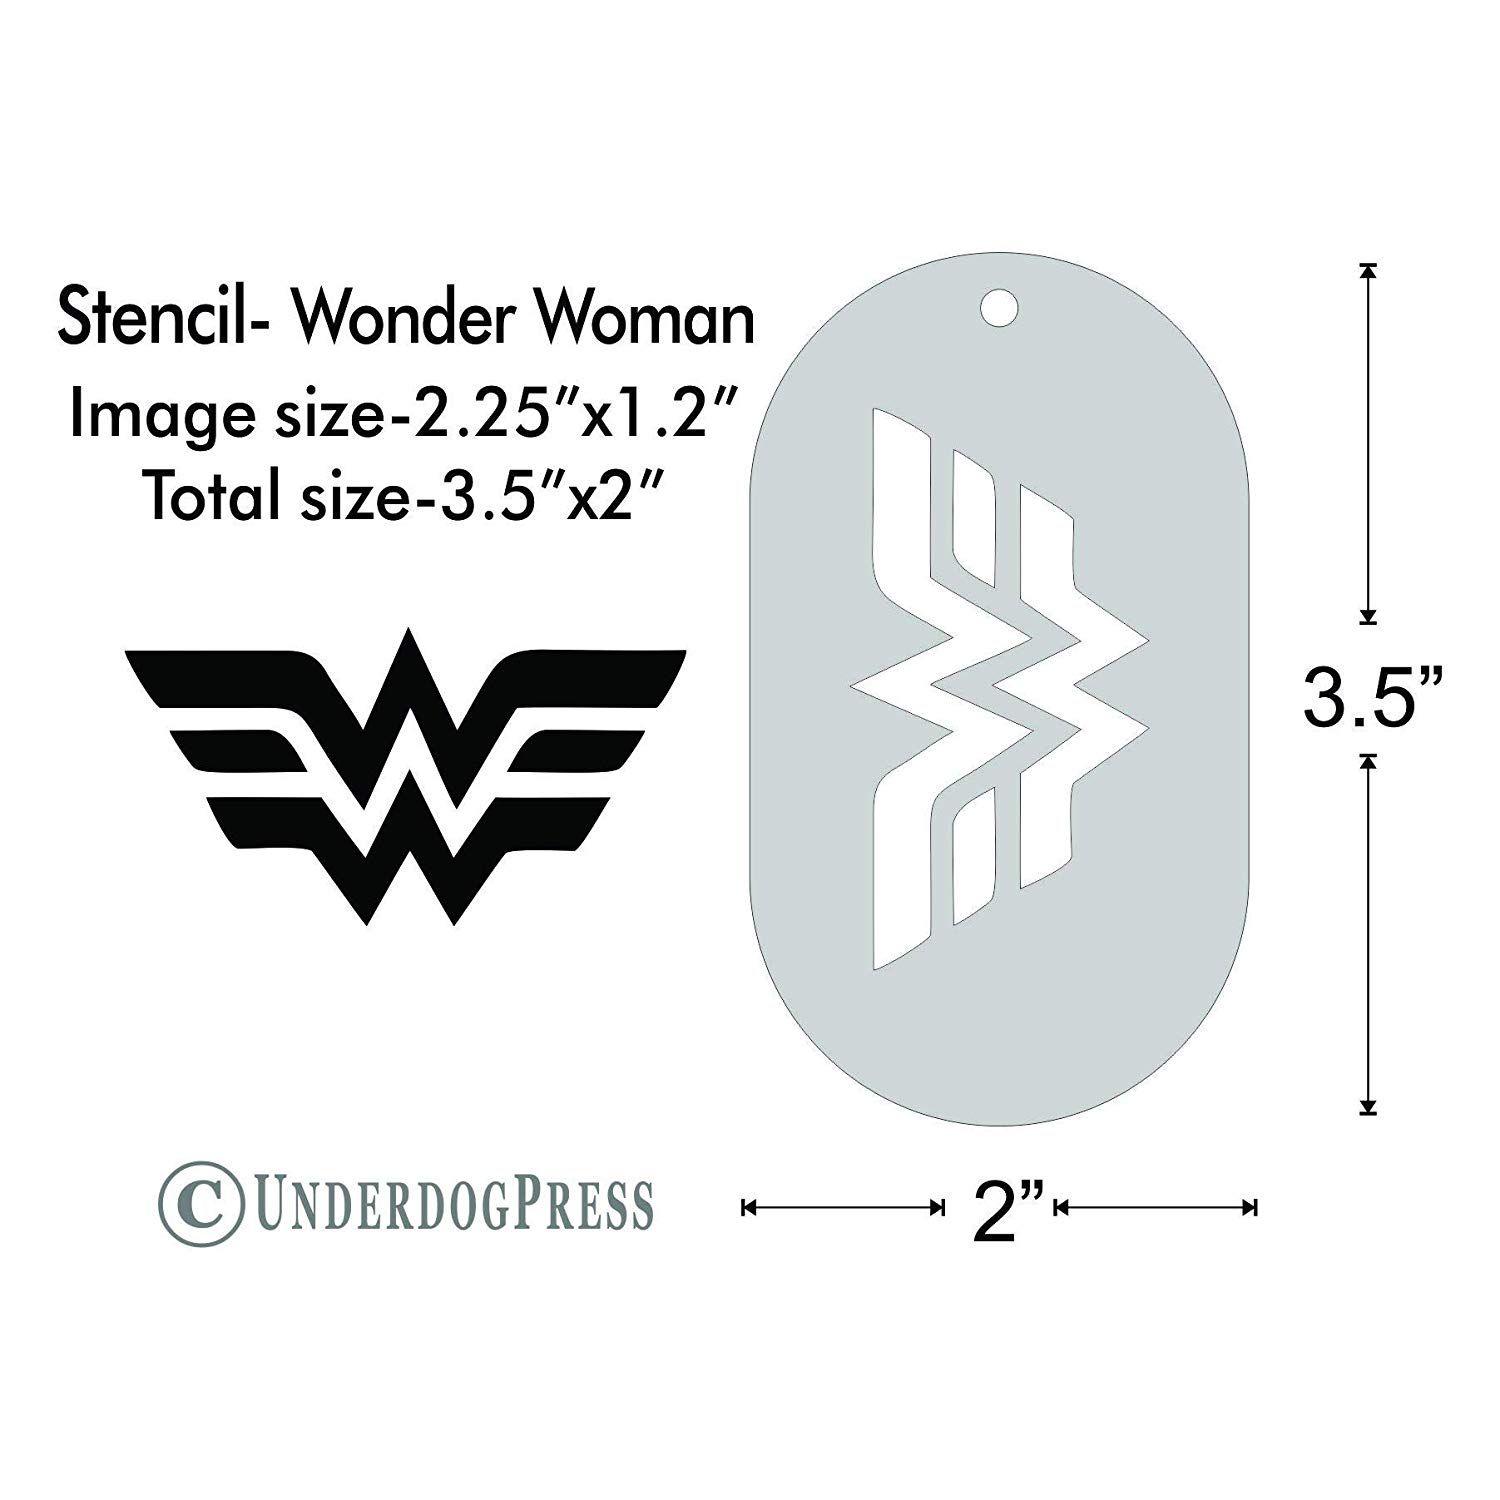 X2 Logo - Stencil Woman logo, Image Size 2.25x1.2 on 3.5x2 Border